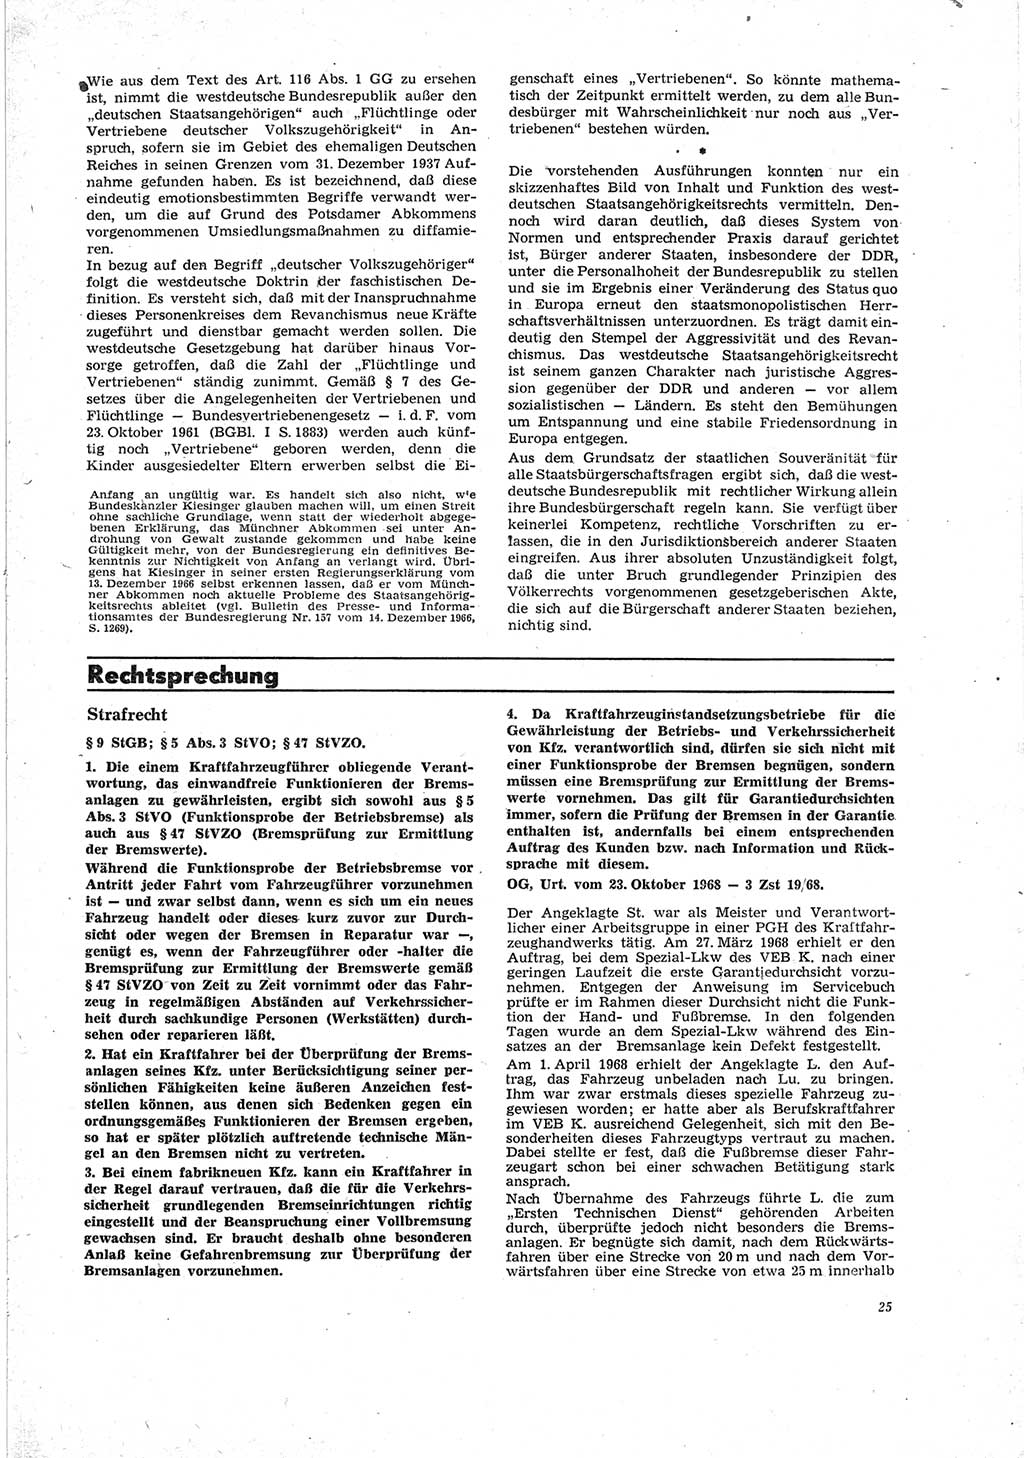 Neue Justiz (NJ), Zeitschrift für Recht und Rechtswissenschaft [Deutsche Demokratische Republik (DDR)], 23. Jahrgang 1969, Seite 25 (NJ DDR 1969, S. 25)